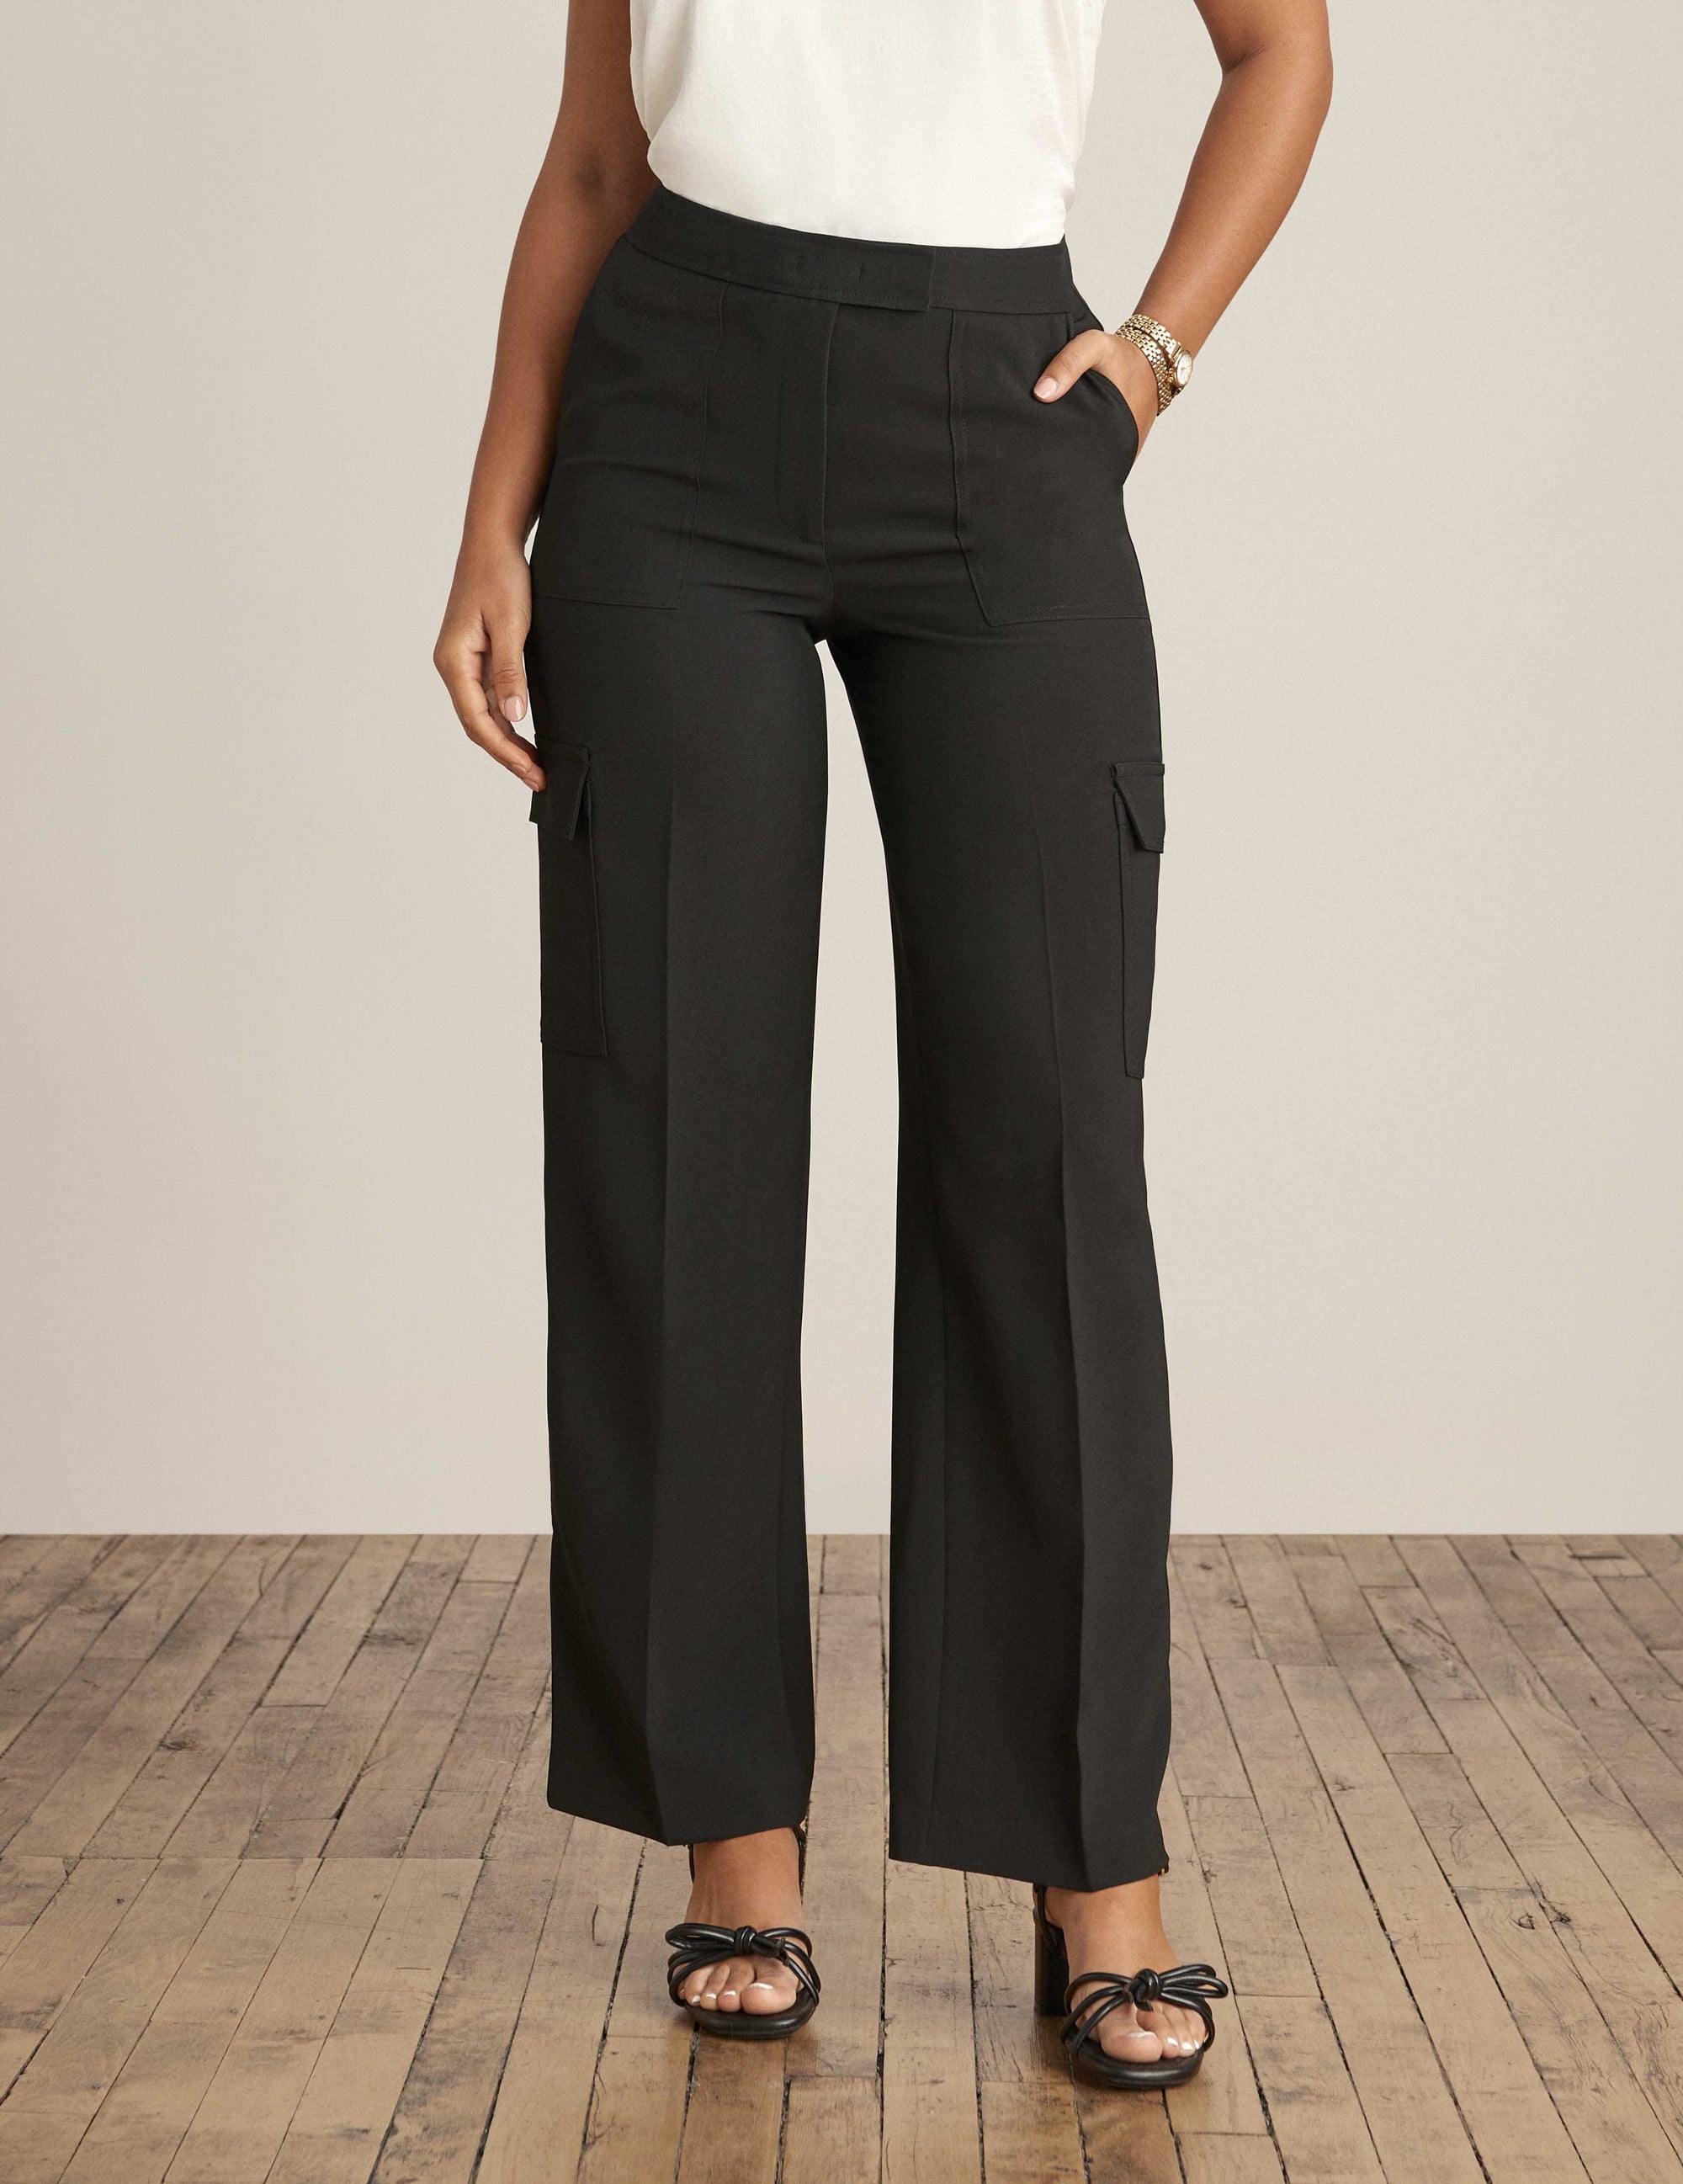 Calvin Klein Women's Full Length Pintuck Seam Leggings Black Size X-Small